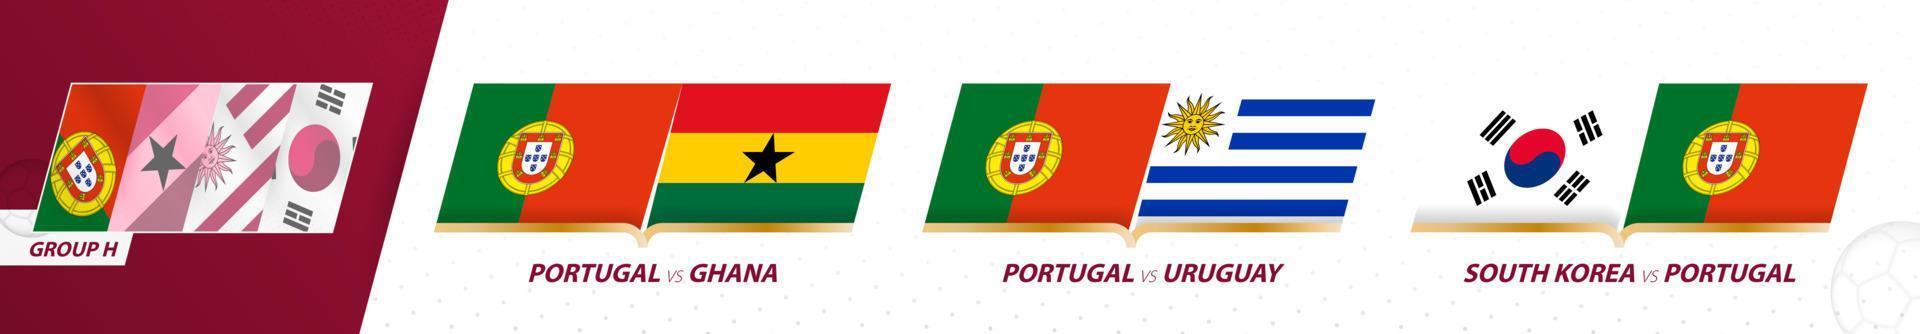 Partidos de la seleccion de futbol de portugal en el grupo h del torneo internacional de futbol 2022. vector